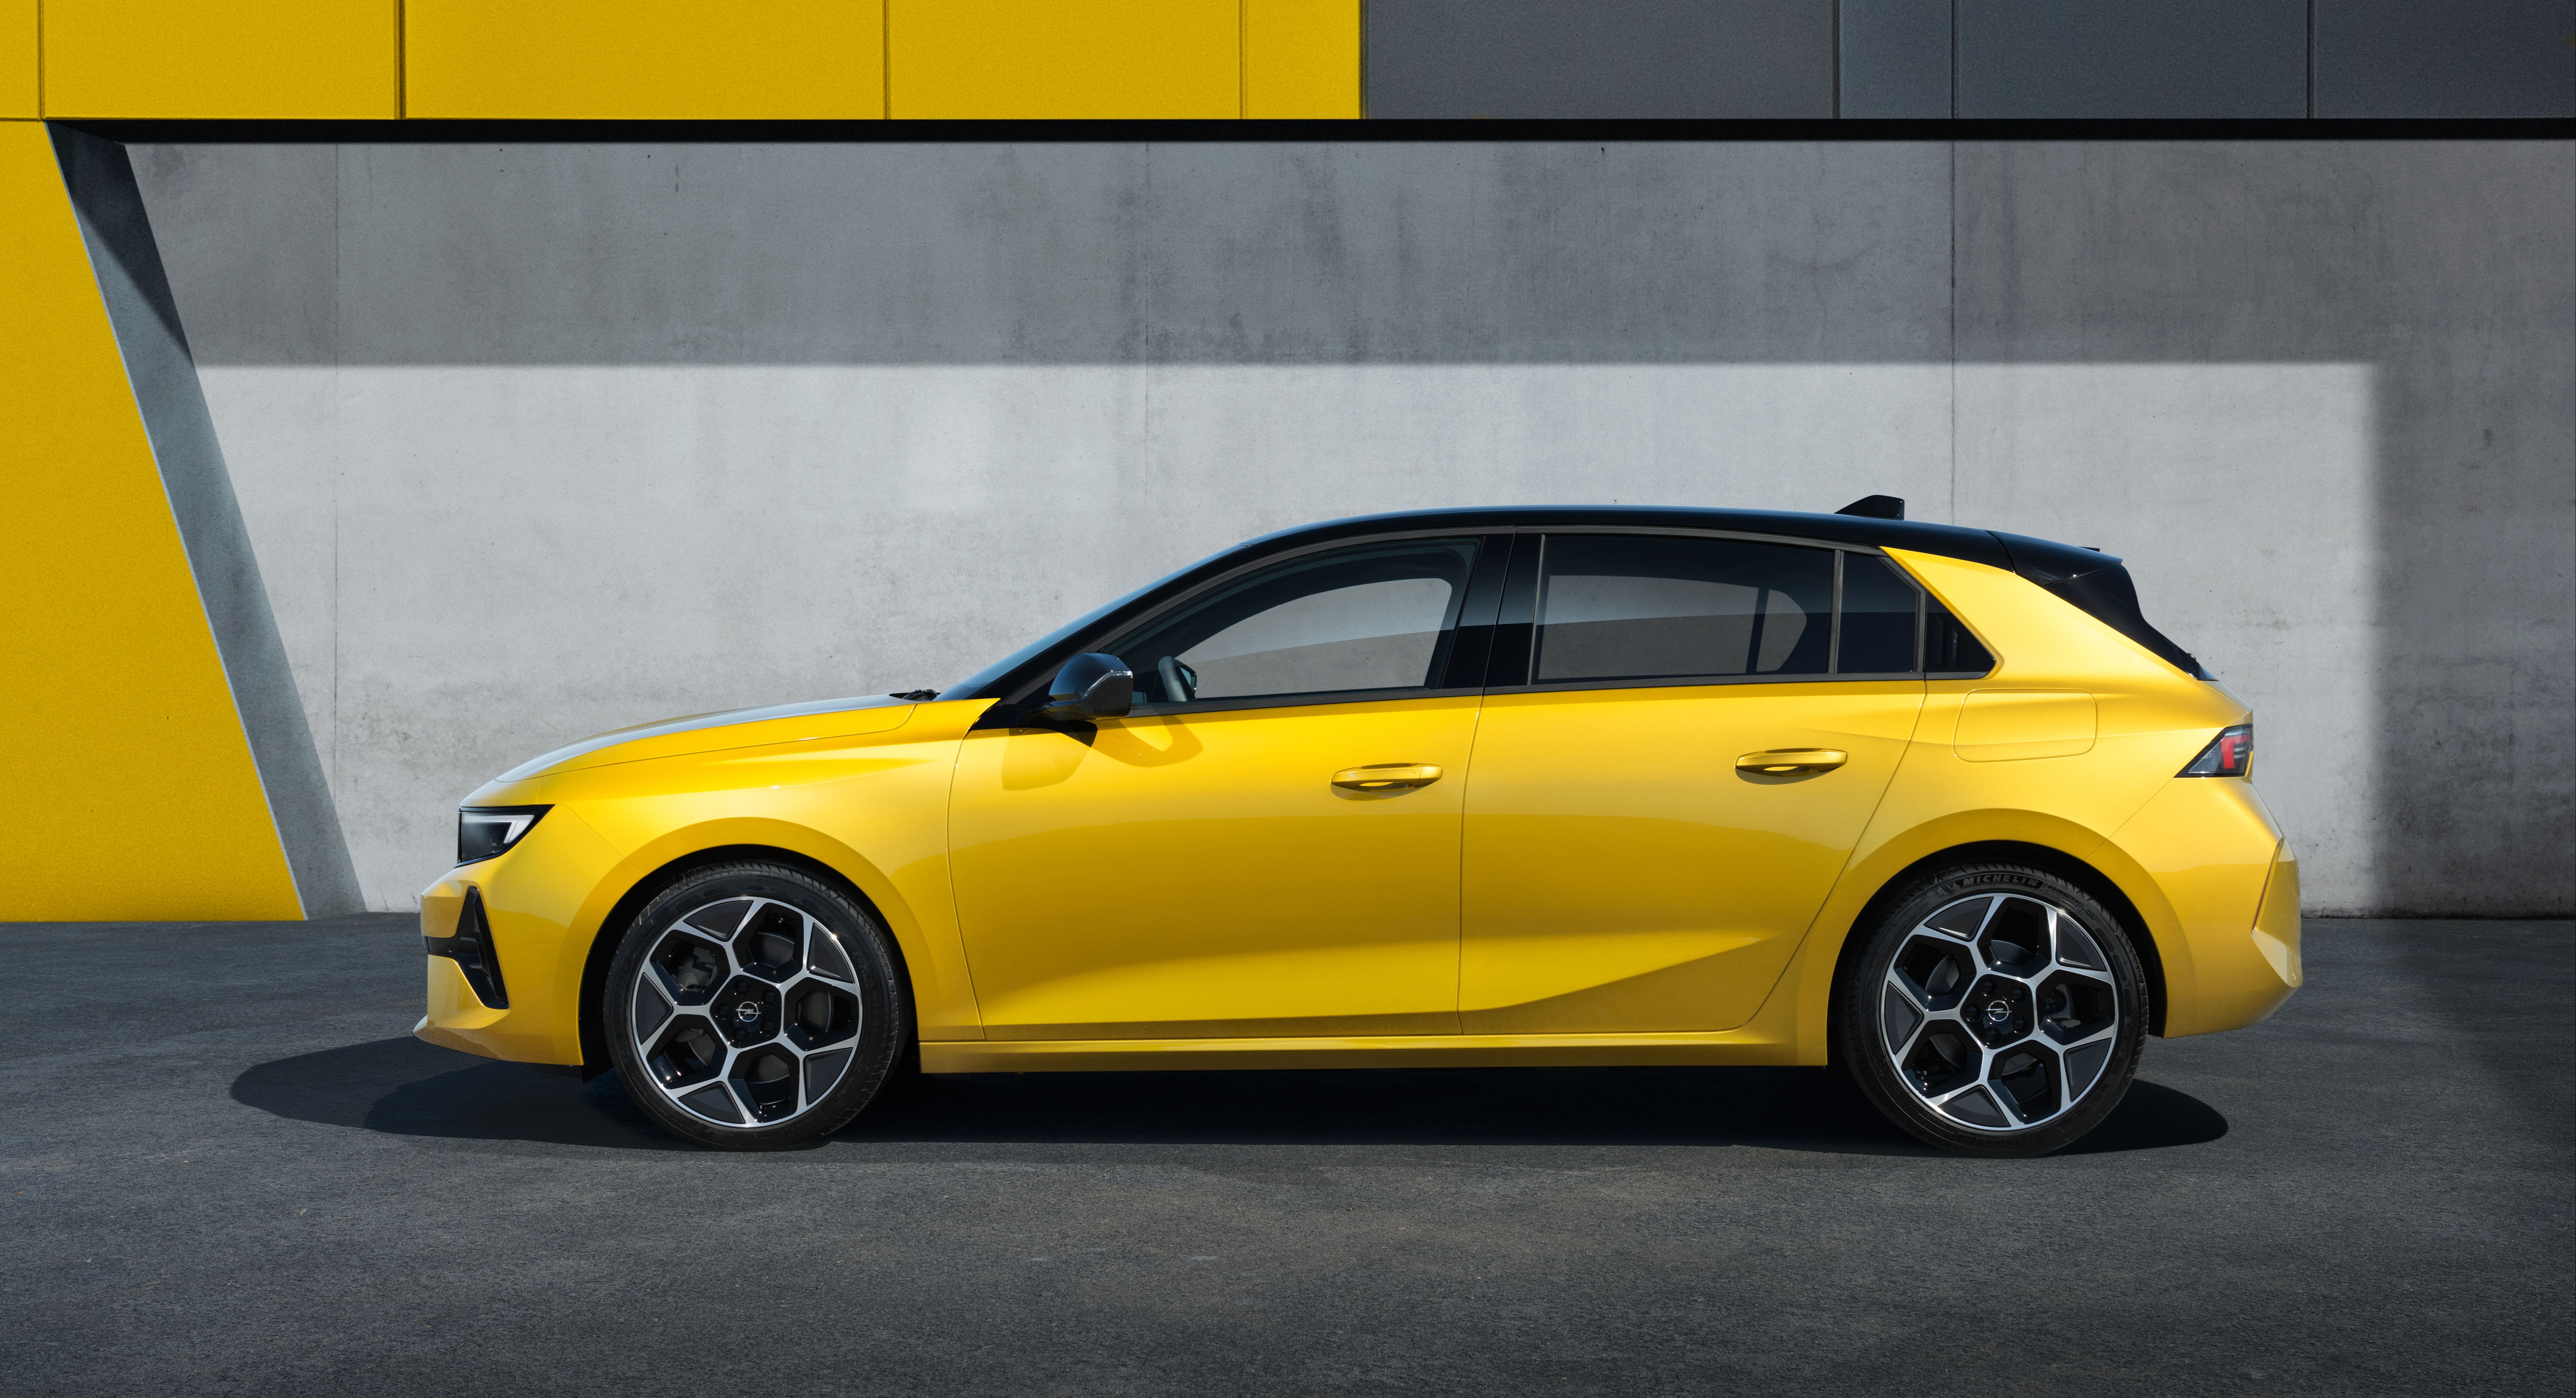 Opel Astra Sports Tourer - Infos, Preise, Alternativen - AutoScout24